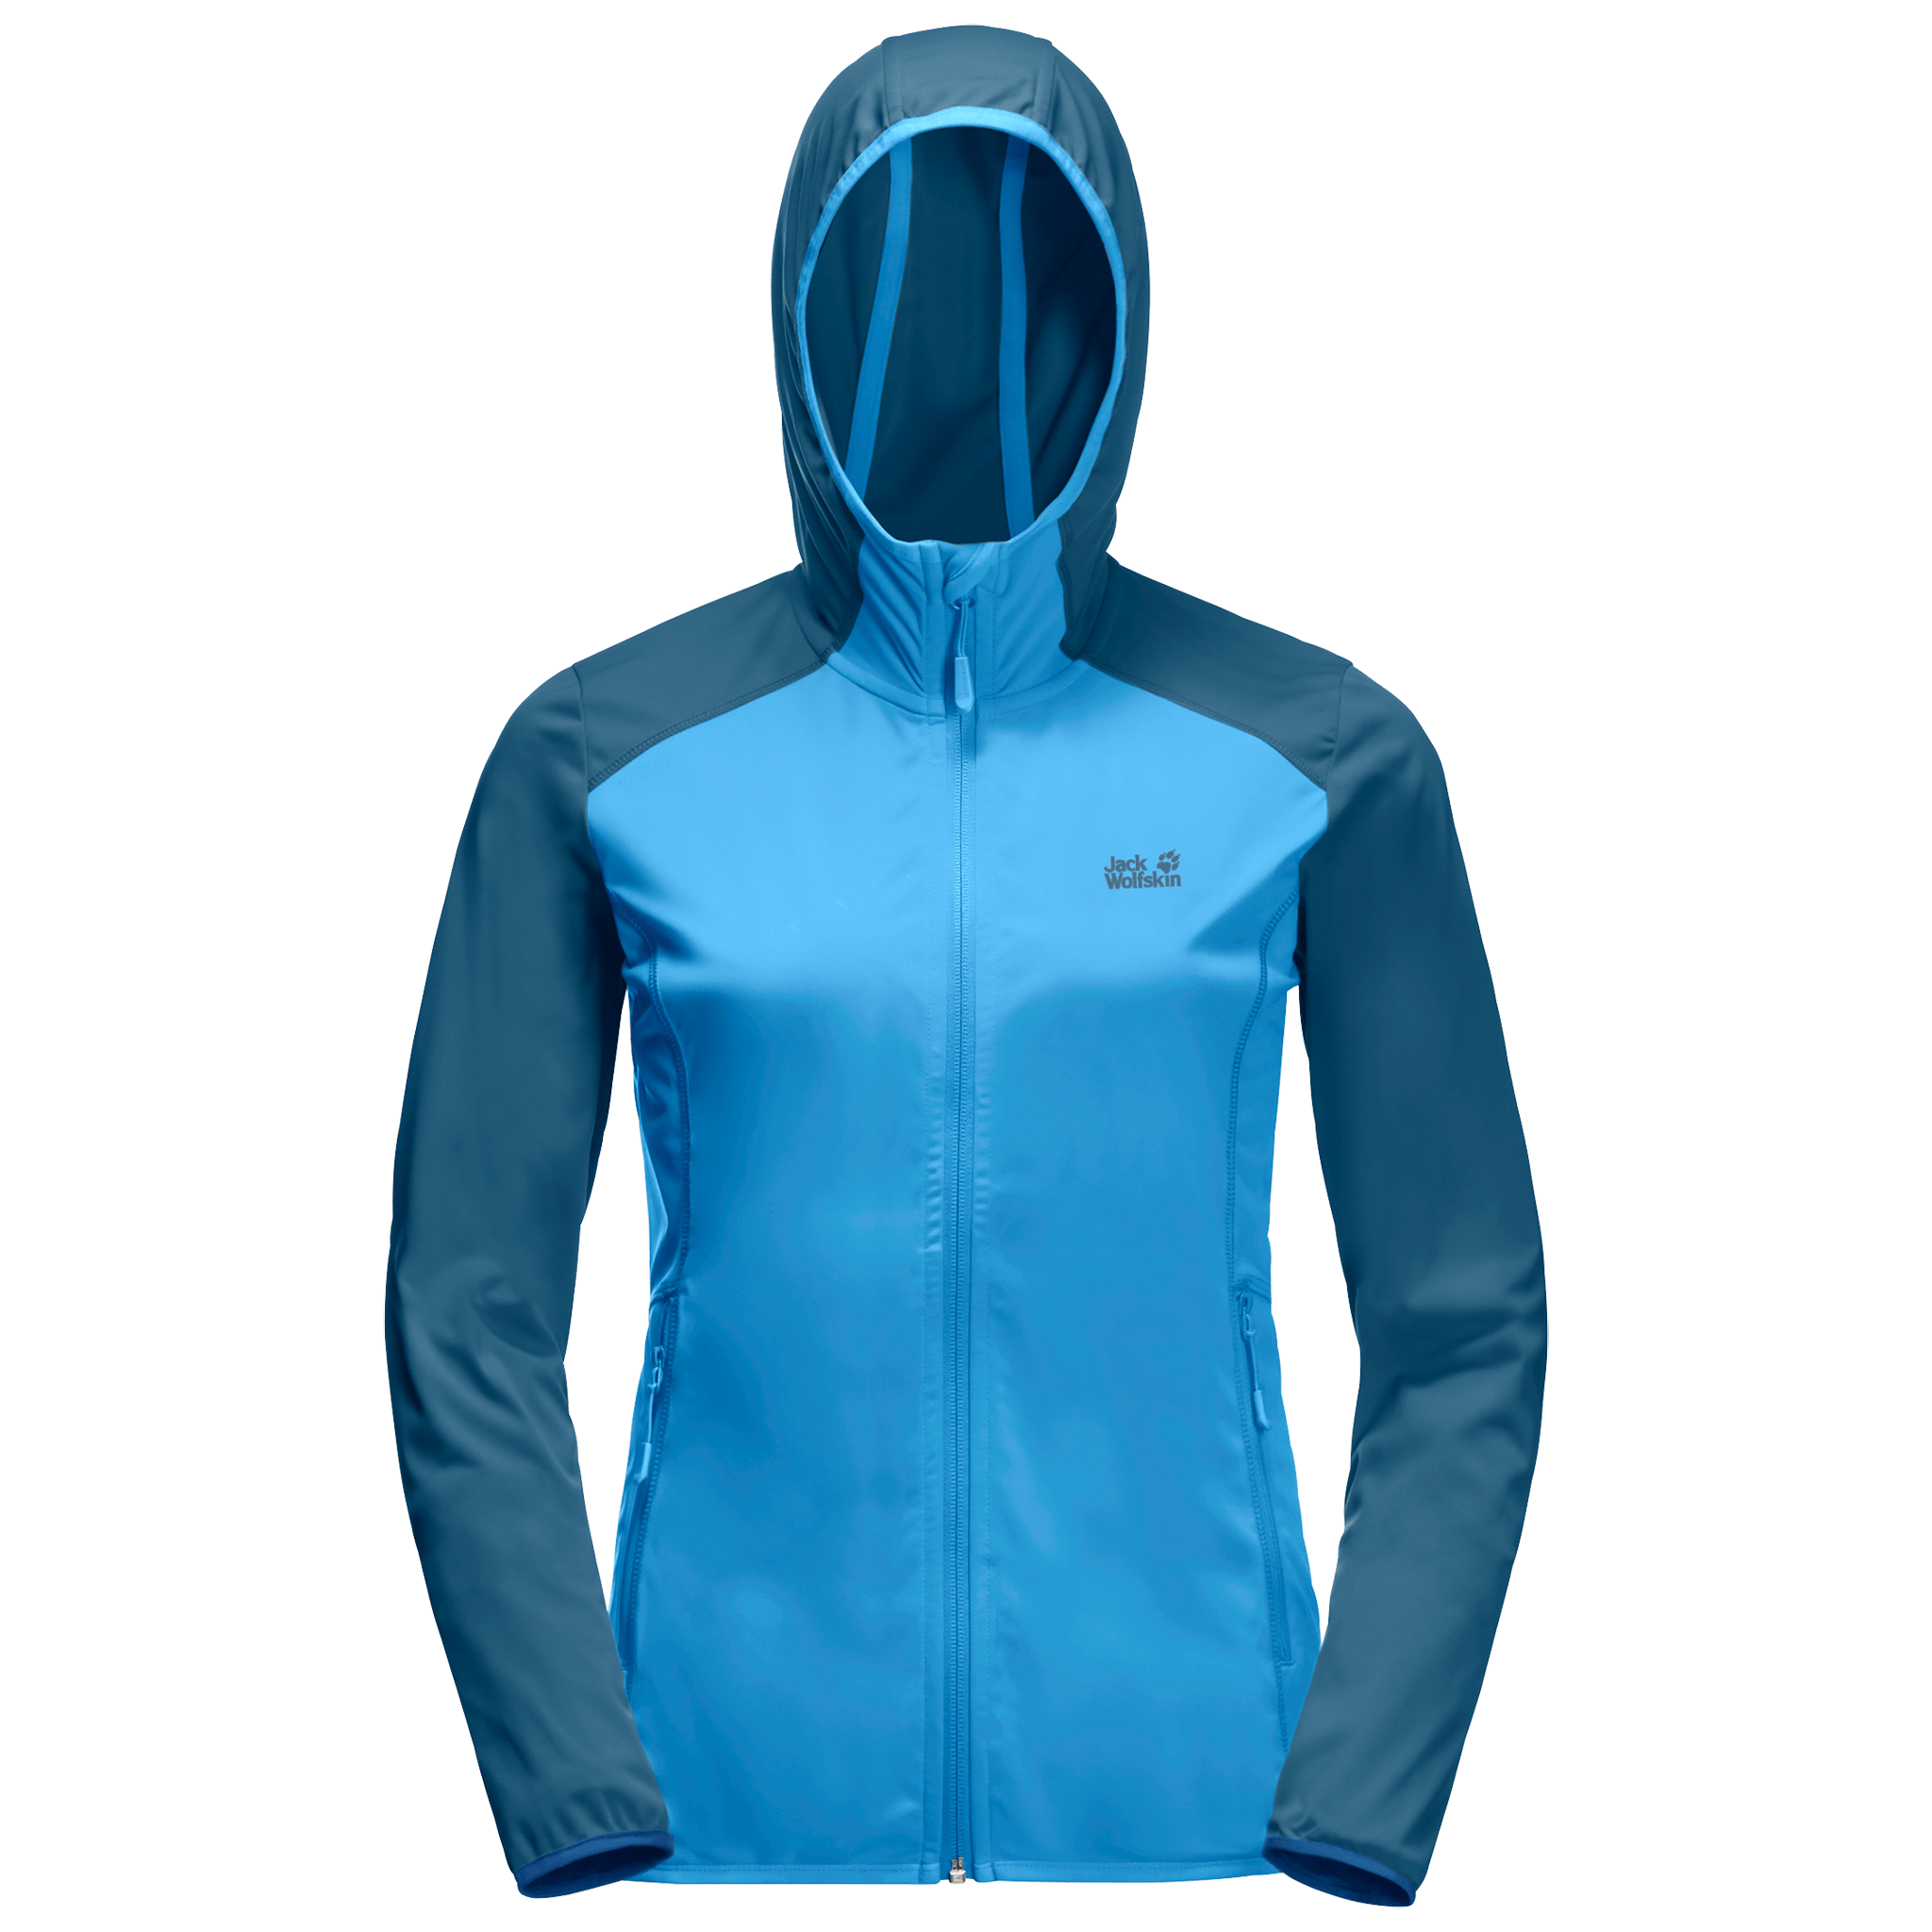 Misty Blue Lightweight Fleece Jacket Women